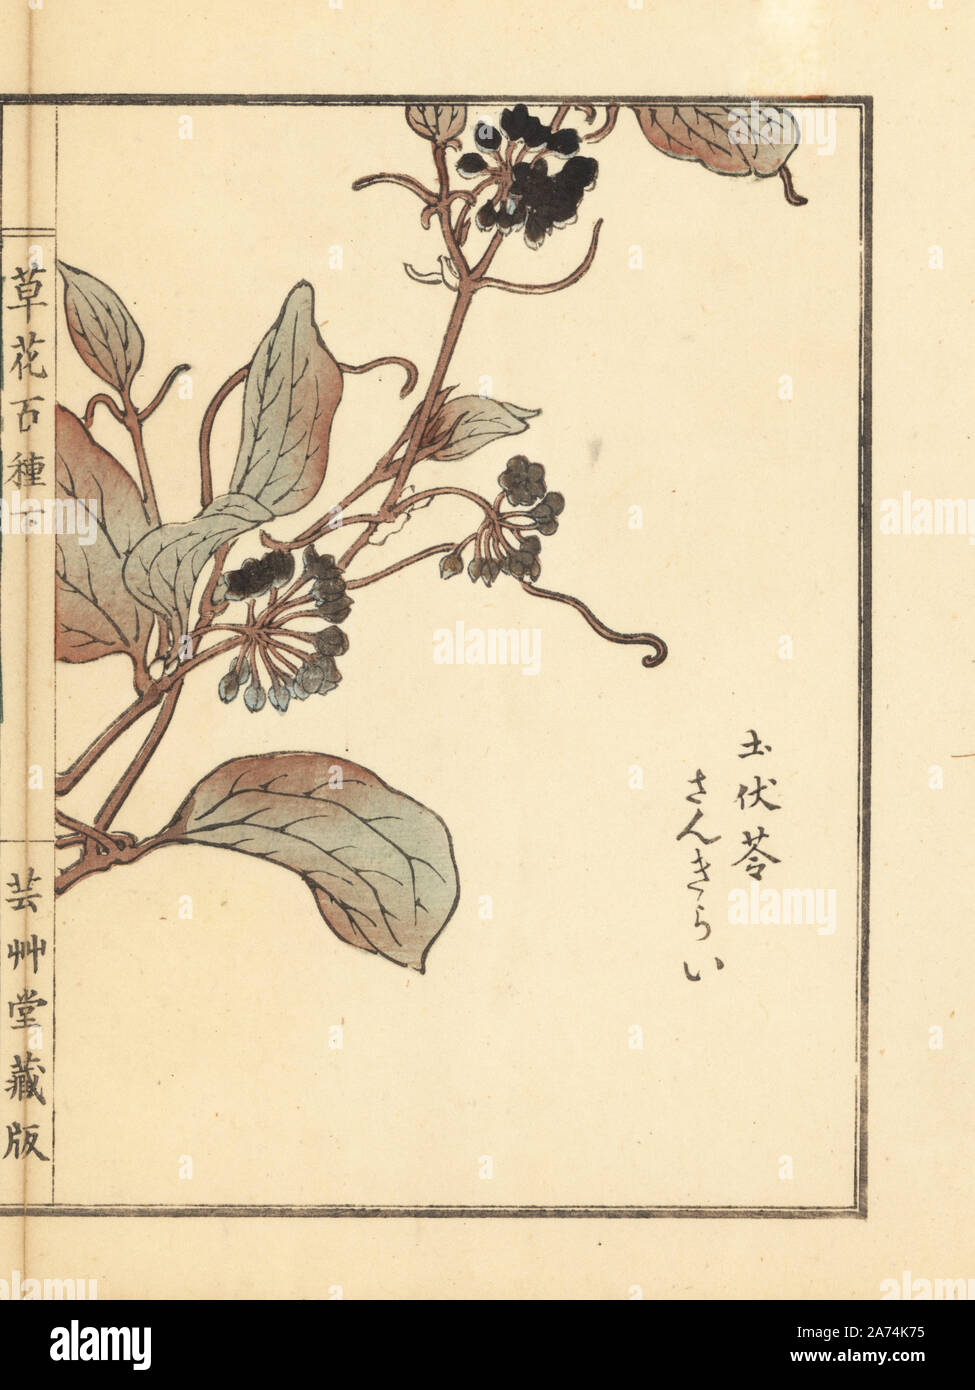 Sankirai or Chinaroot, Smilax glabra. Handcoloured woodblock print by Kono Bairei from Kusa Bana Hyakushu (One Hundred Varieties of Flowers), Tokyo, Yamada, 1901. Stock Photo